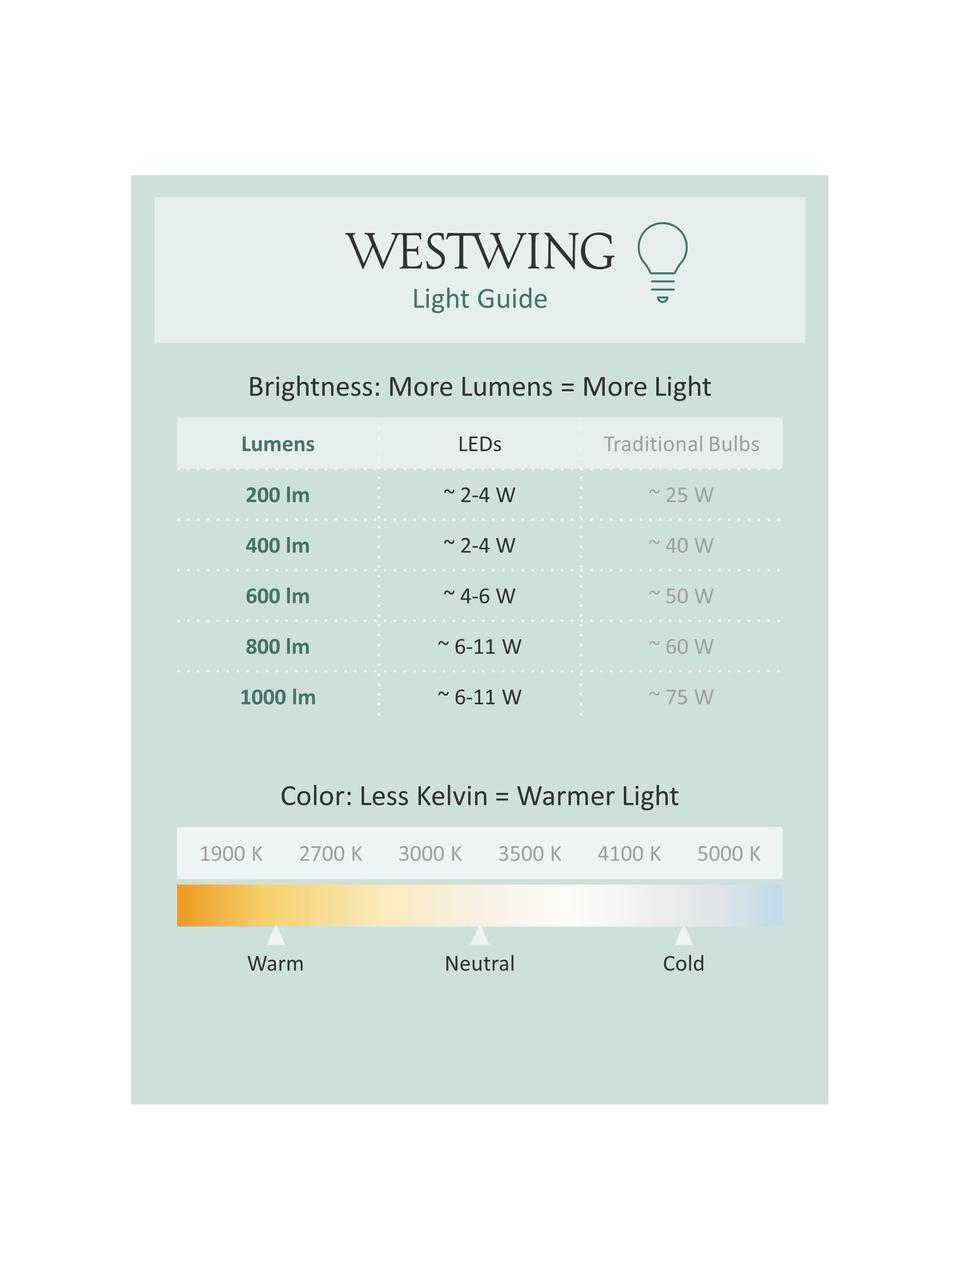 Lampe d'extérieur LED mobile intensité variable Lola, Couleur or, blanc, Ø 11 x haut. 32 cm